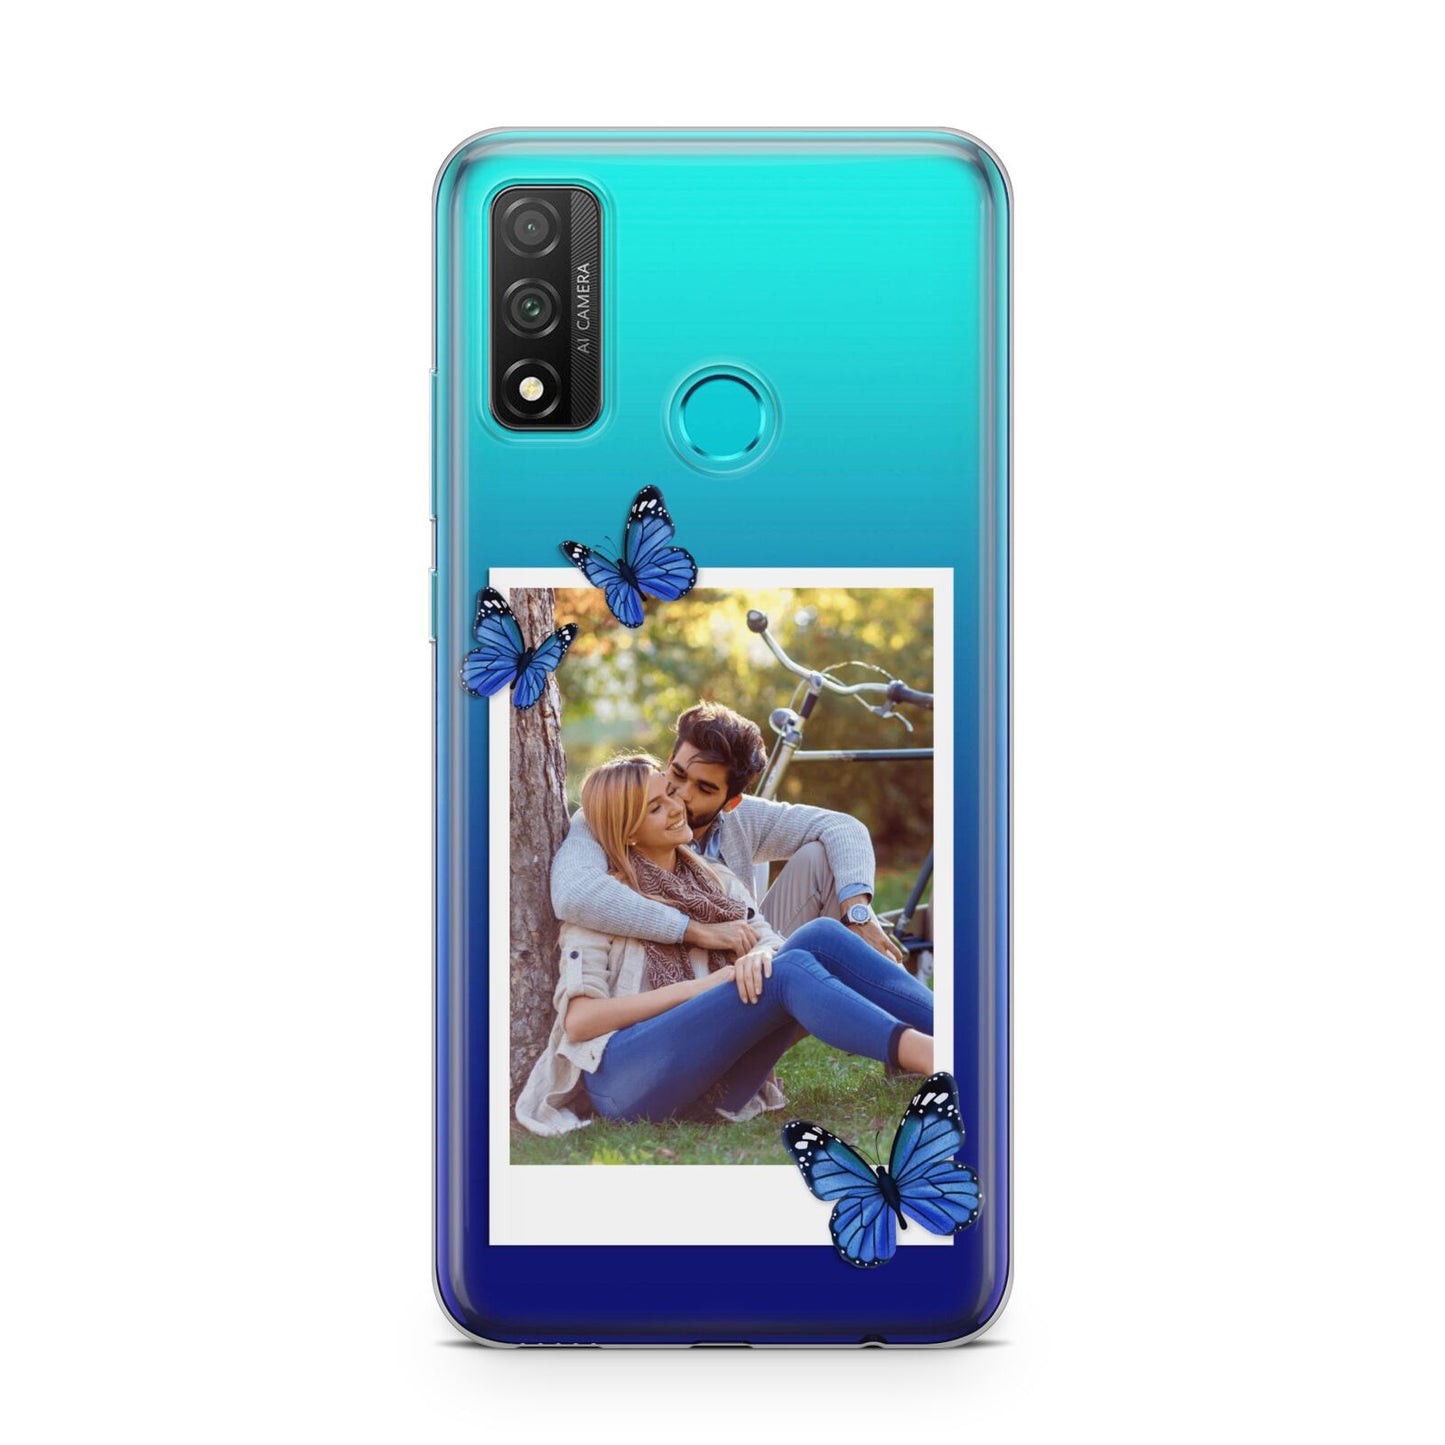 Polaroid Photo Huawei P Smart 2020